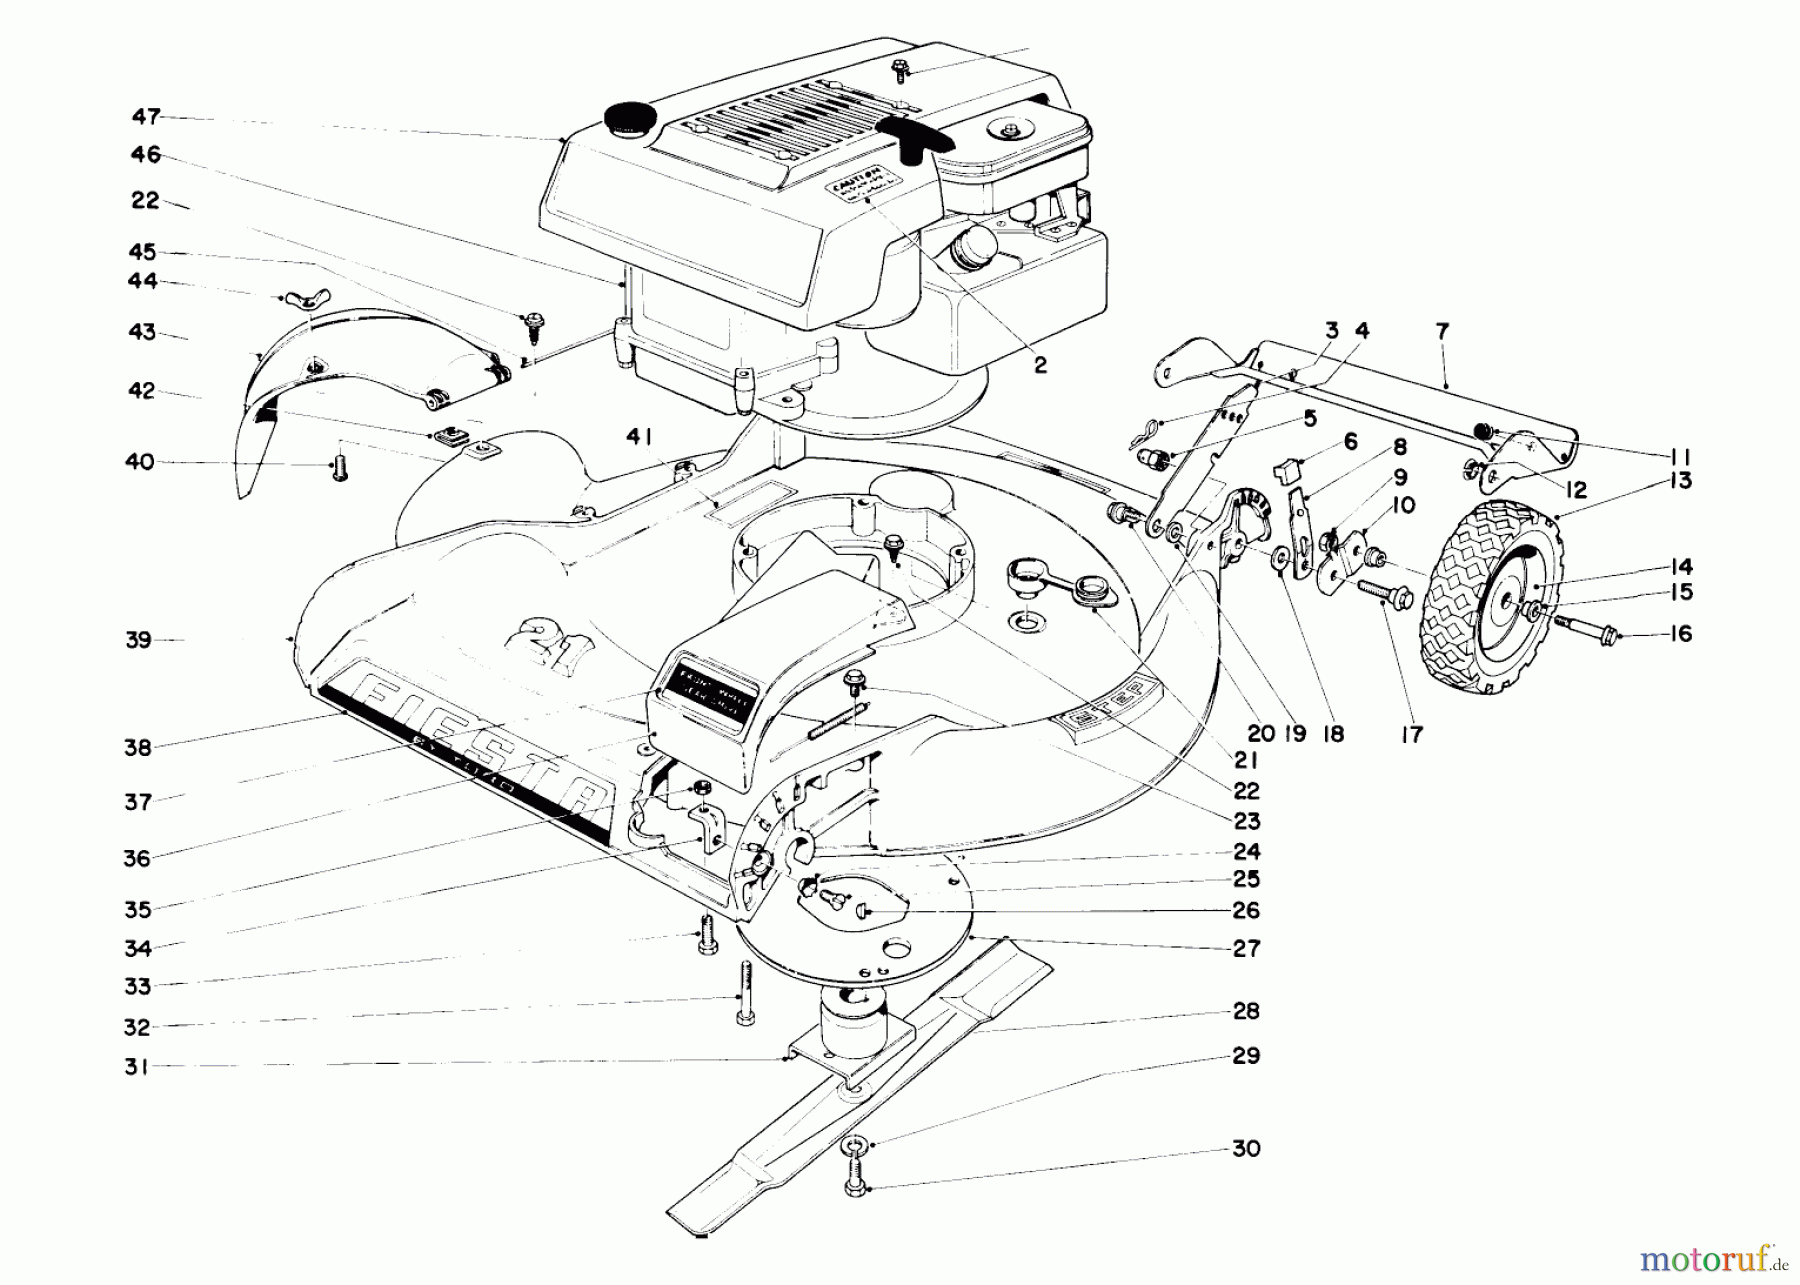  Toro Neu Mowers, Walk-Behind Seite 1 16000 - Toro Fiesta Lawnmower, 1971 (1000001-1999999) HOUSING AND ENGINE ASSEMBLY MODEL 16222